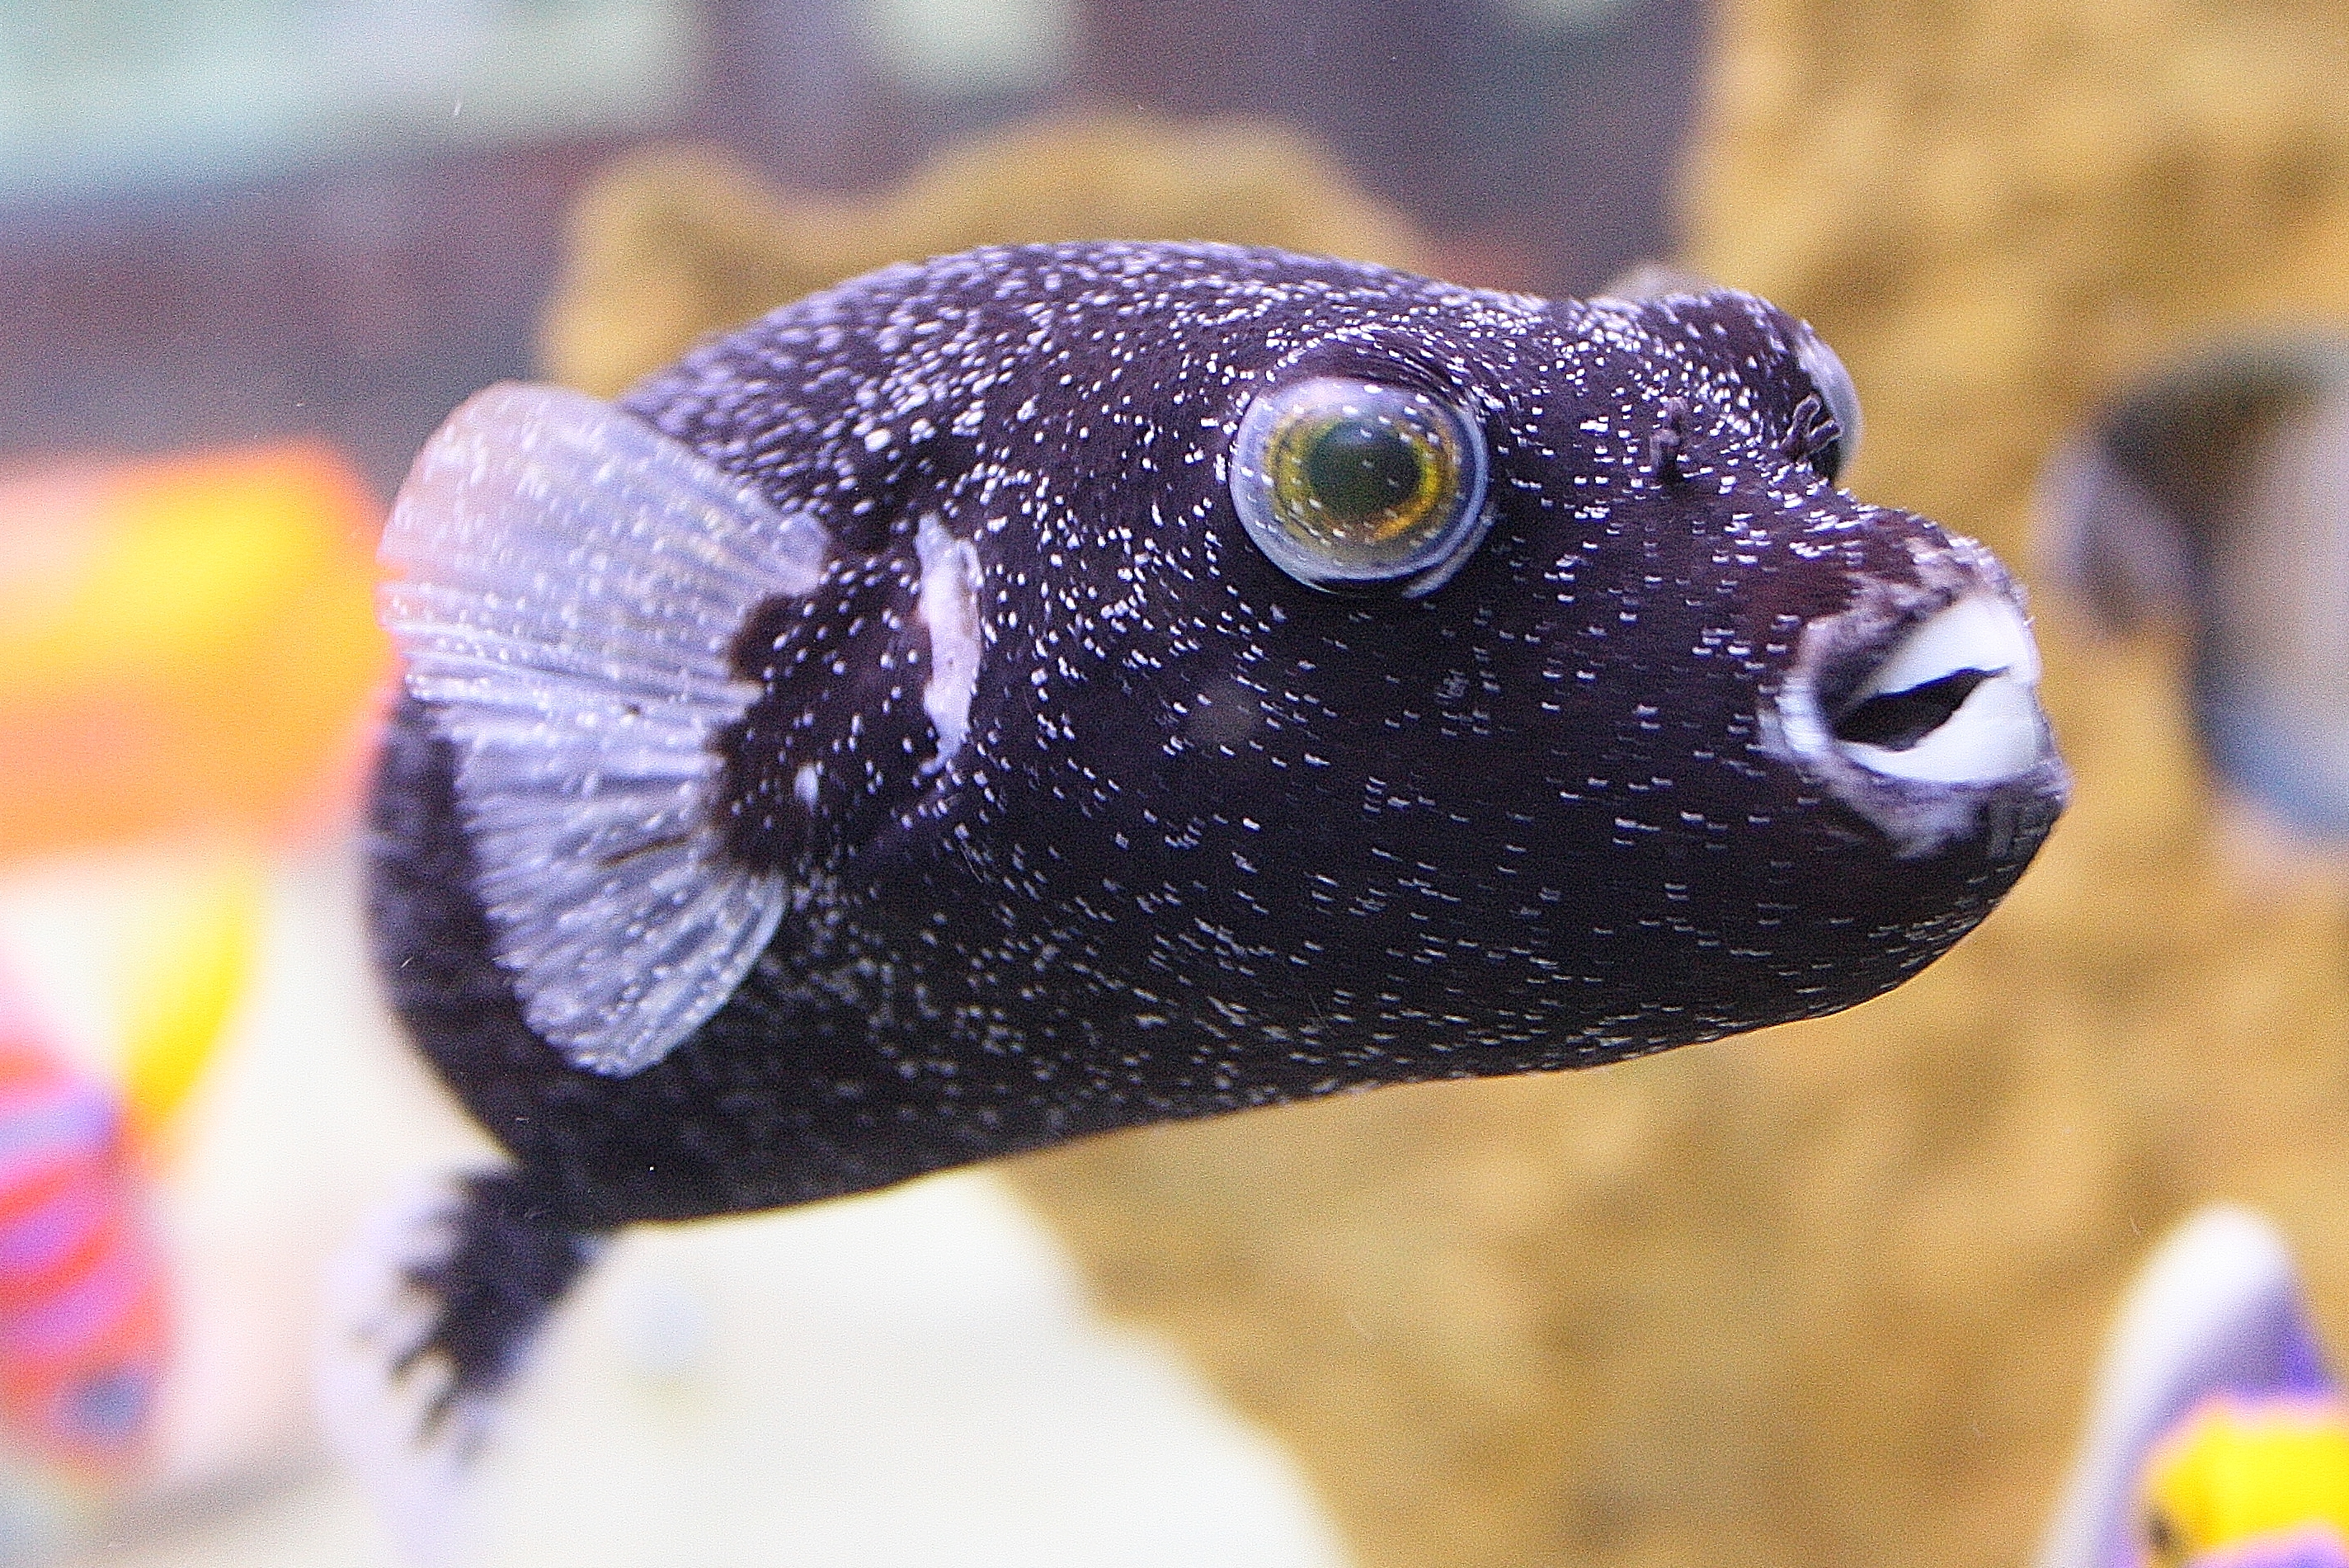 Maladie des poissons marins - Ich marin: Puffer de Diamant Noir